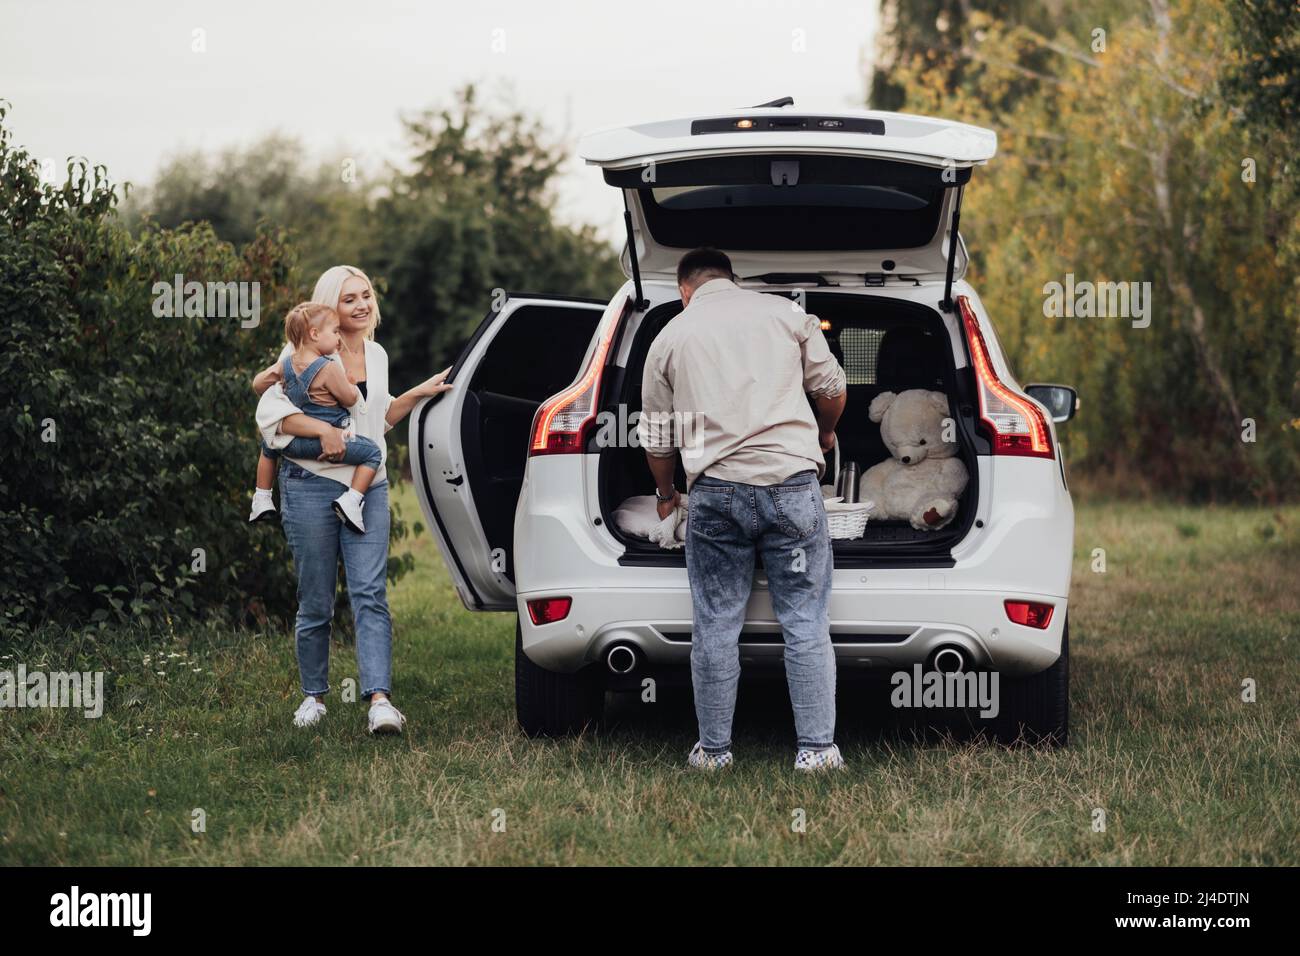 Zwei Eltern mit ihrem kleinen Kind, die sich auf ein Picknick im Freien vorbereiten, junge Familie, die mit dem SUV-Auto unterwegs ist Stockfoto